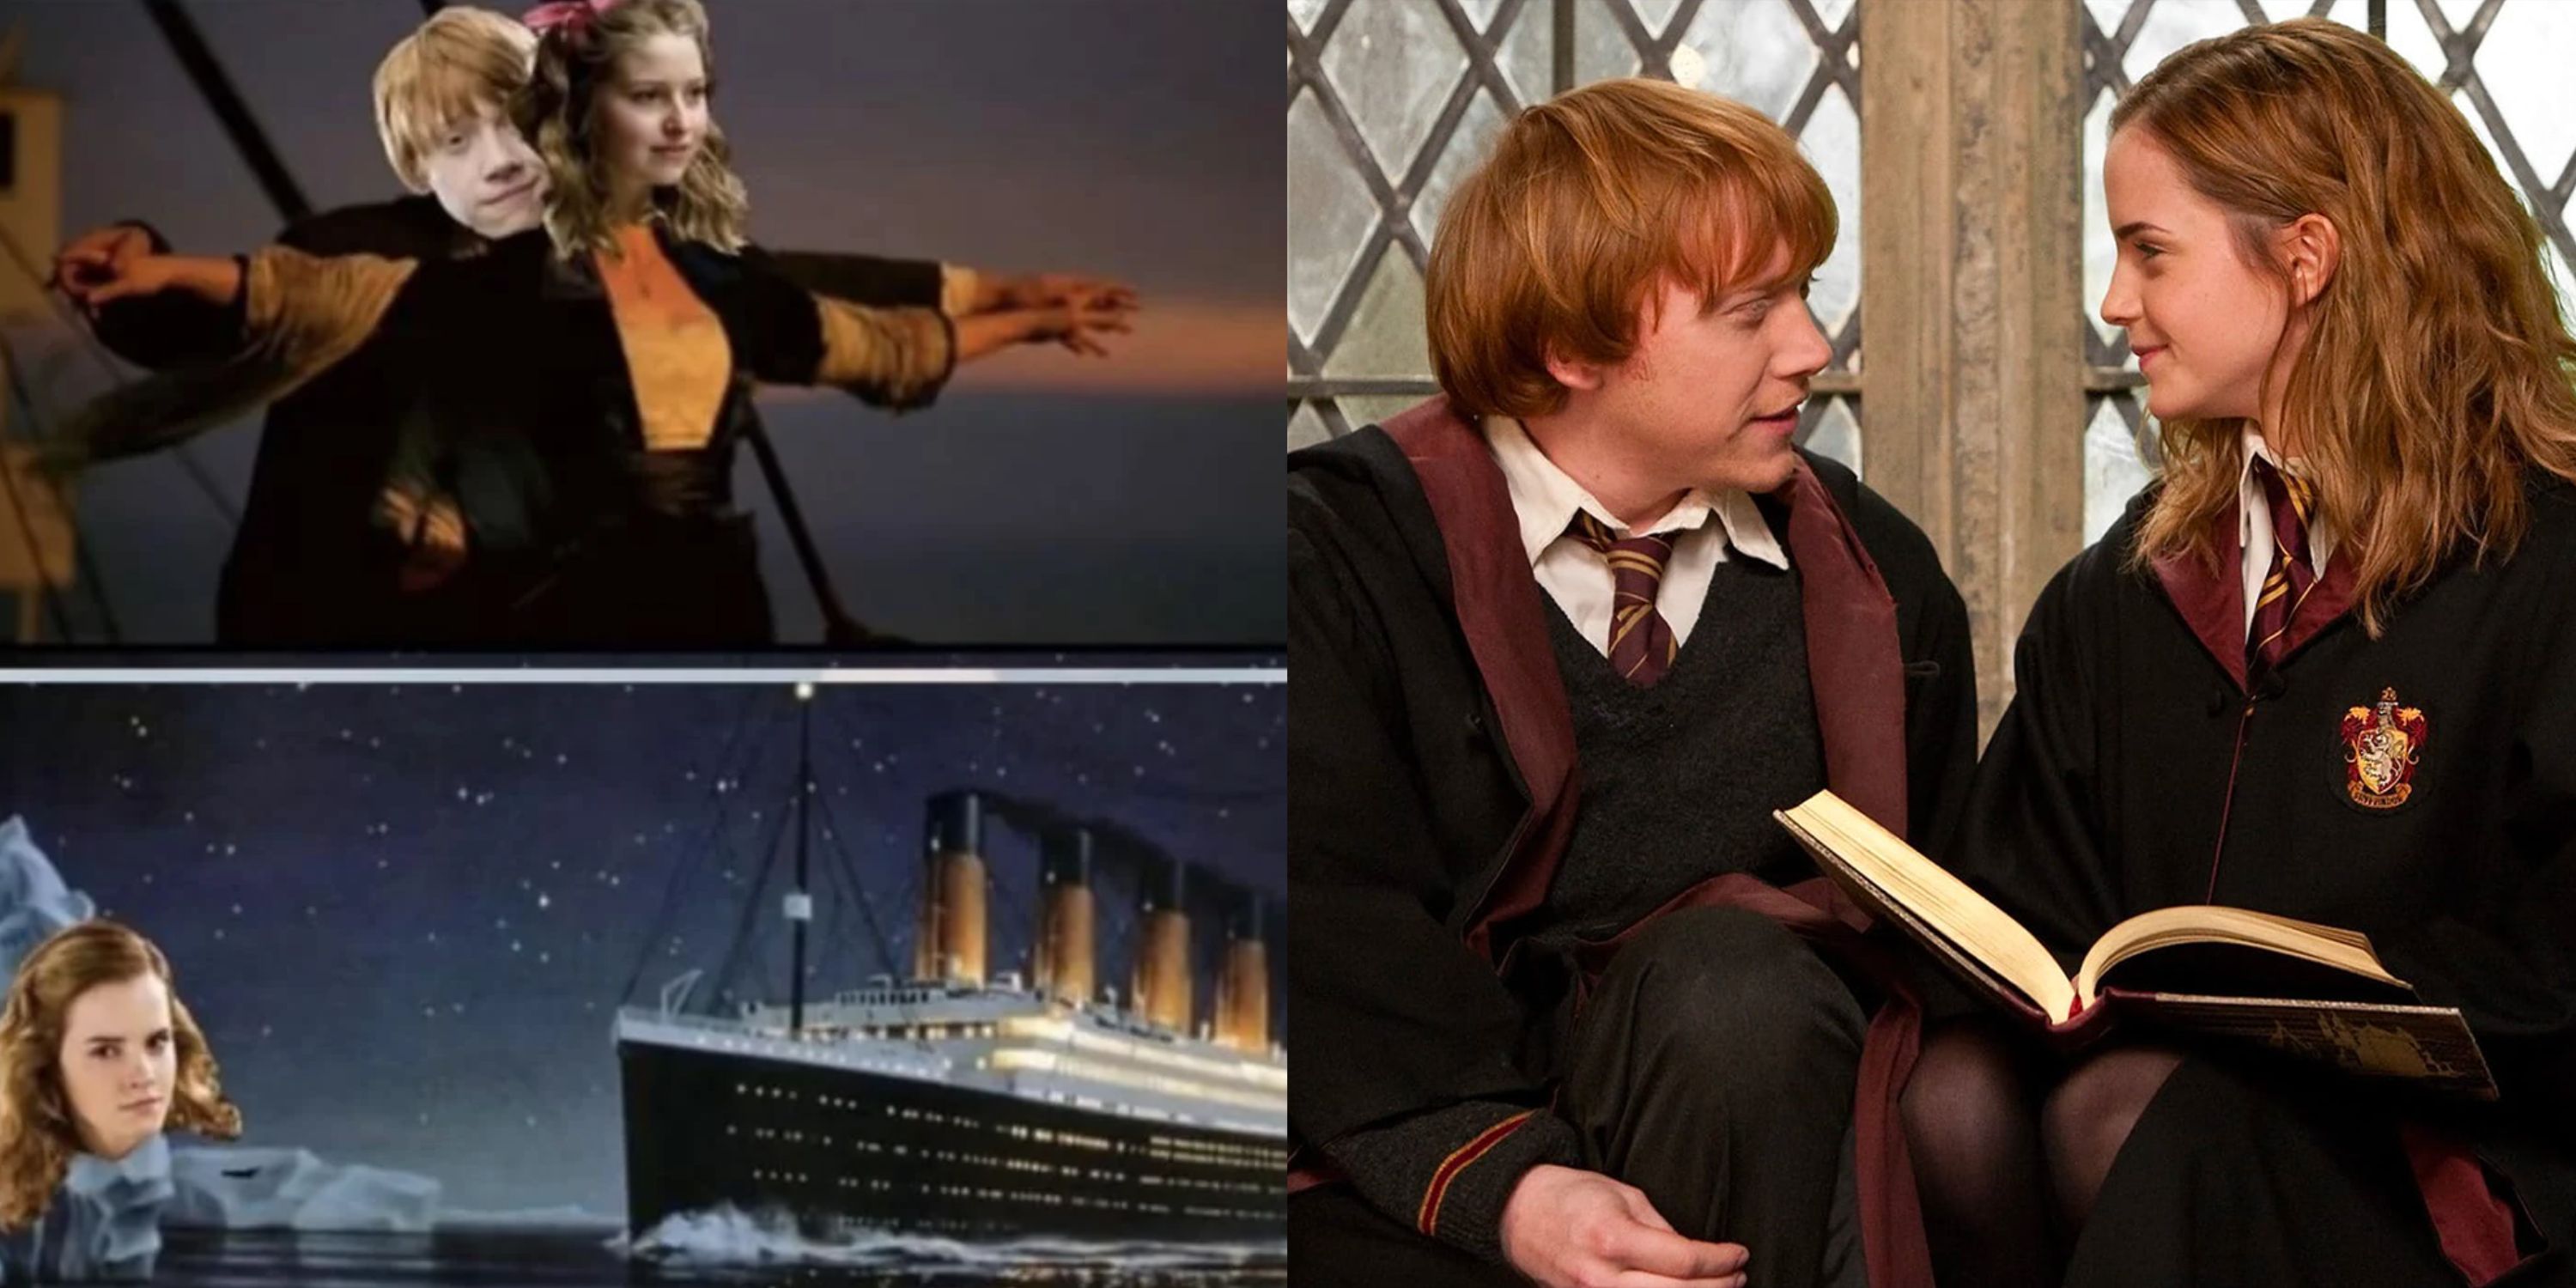 Harry Potter memes part 3 #harrypottermemes #memes #harrypotter #hp #ron # hermione #hogwarts 